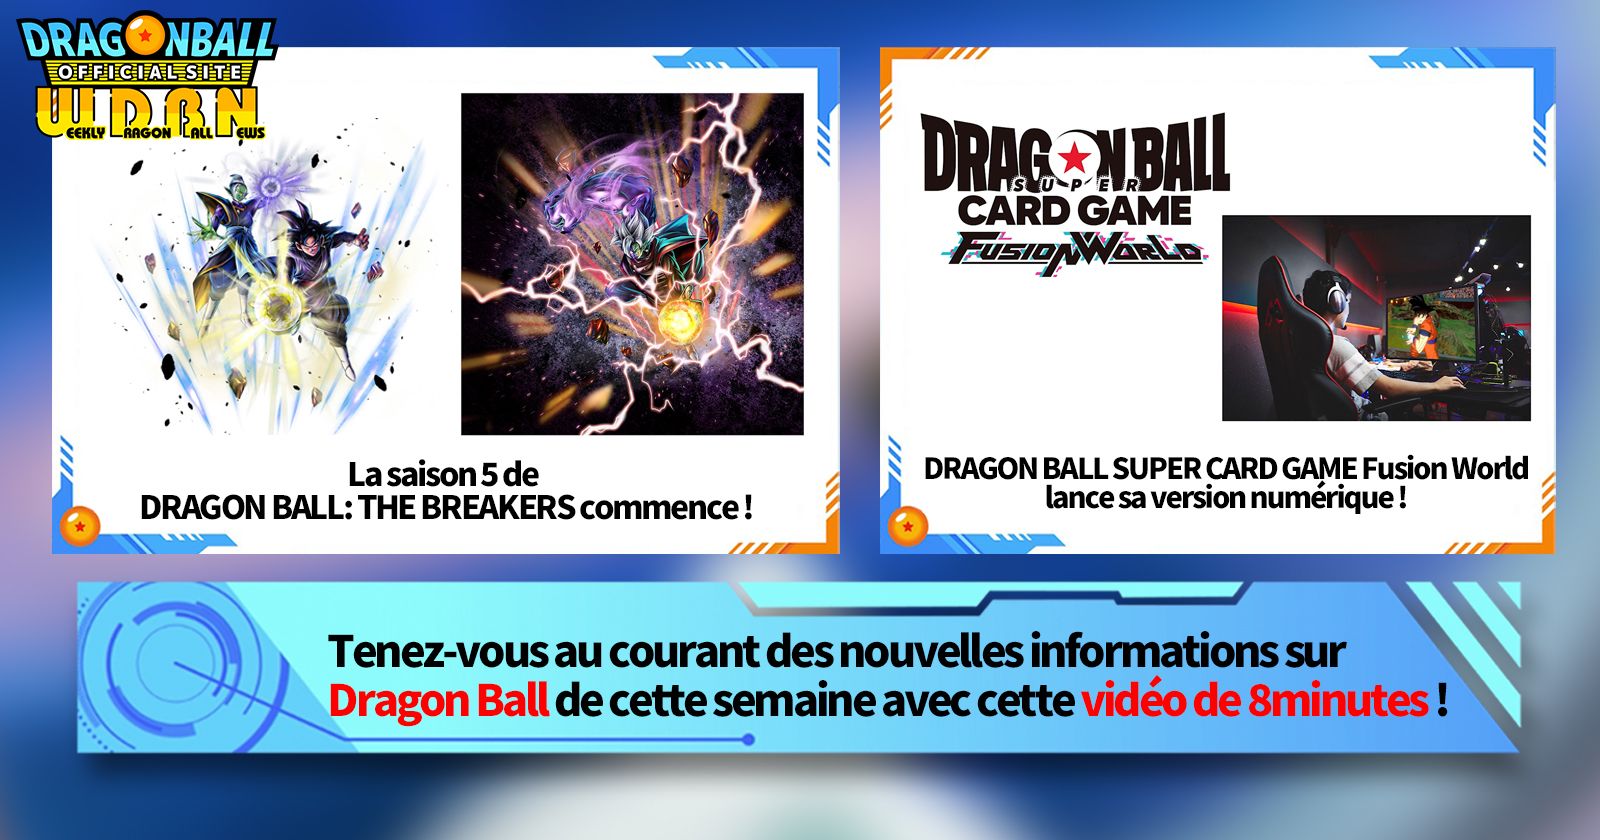  [4 mars] Diffusion Nouvelles hebdomadaires Dragon Ball !